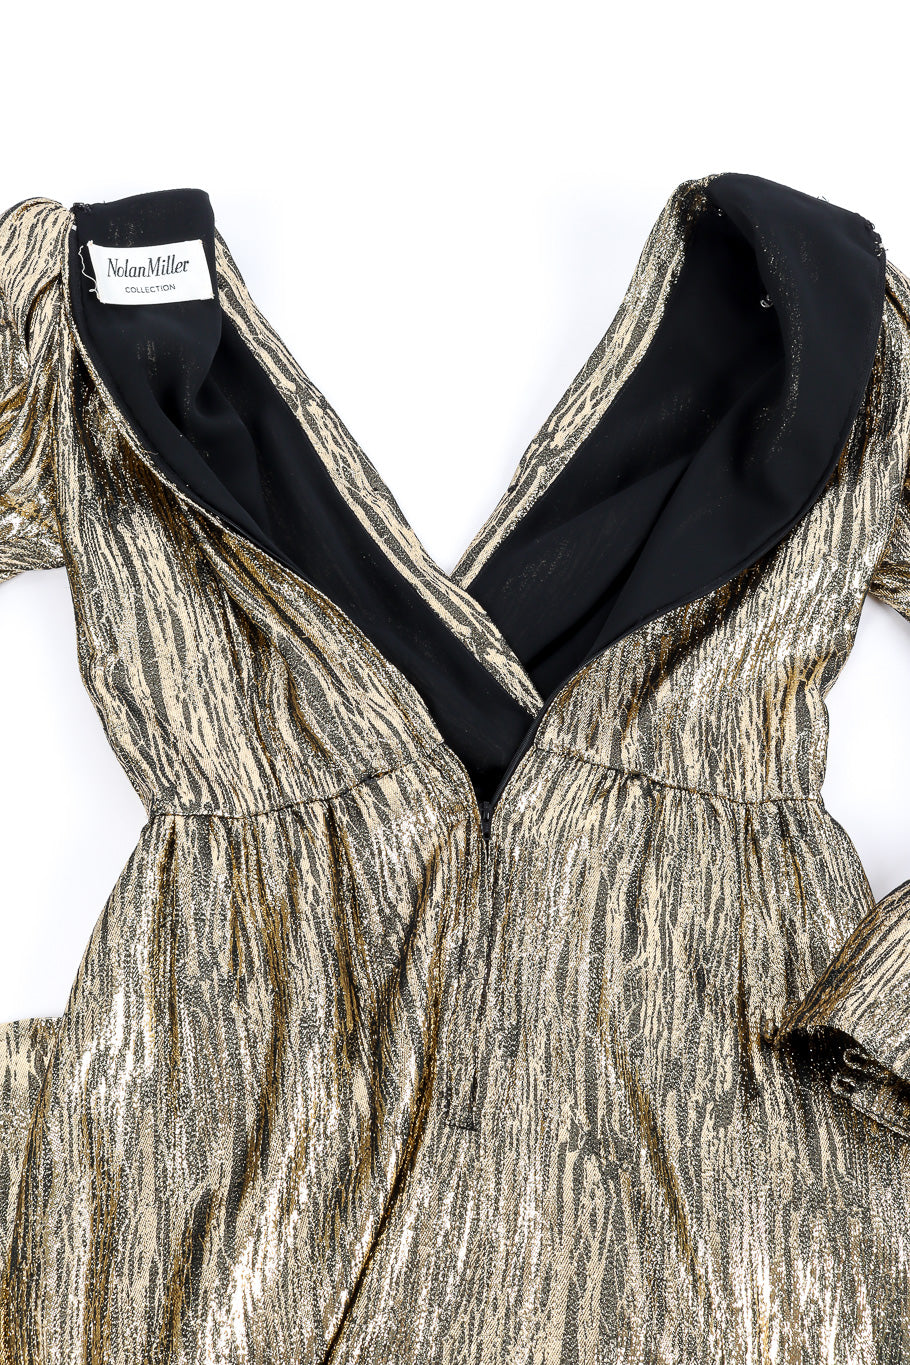 Metallic dress by Nolan Miller unzipped @recessla